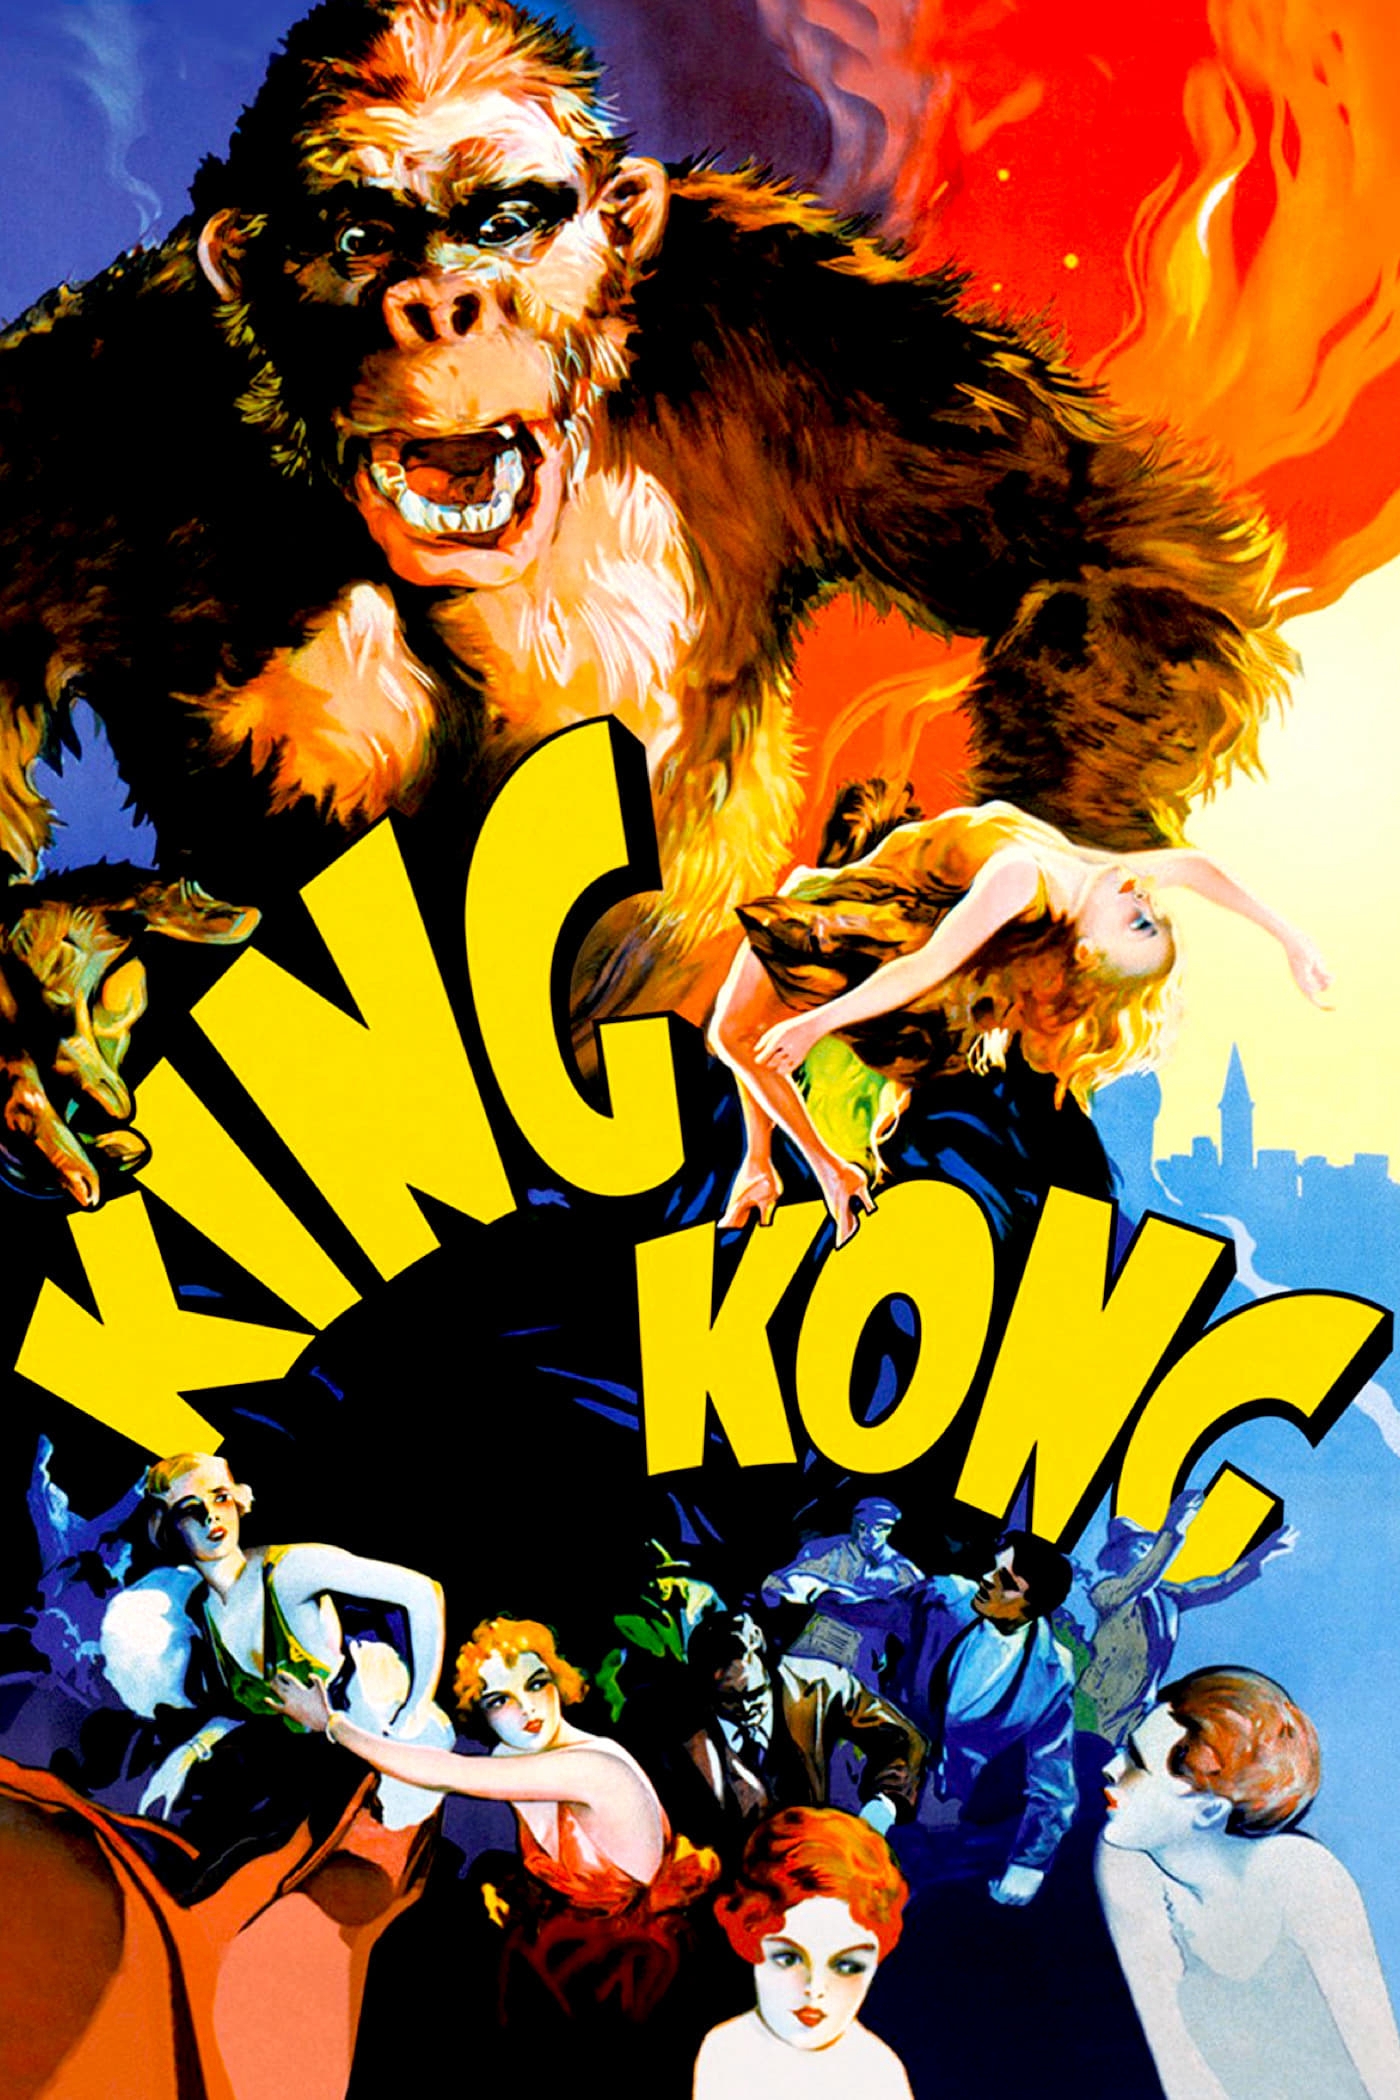 Xem Phim King Kong (King Kong)